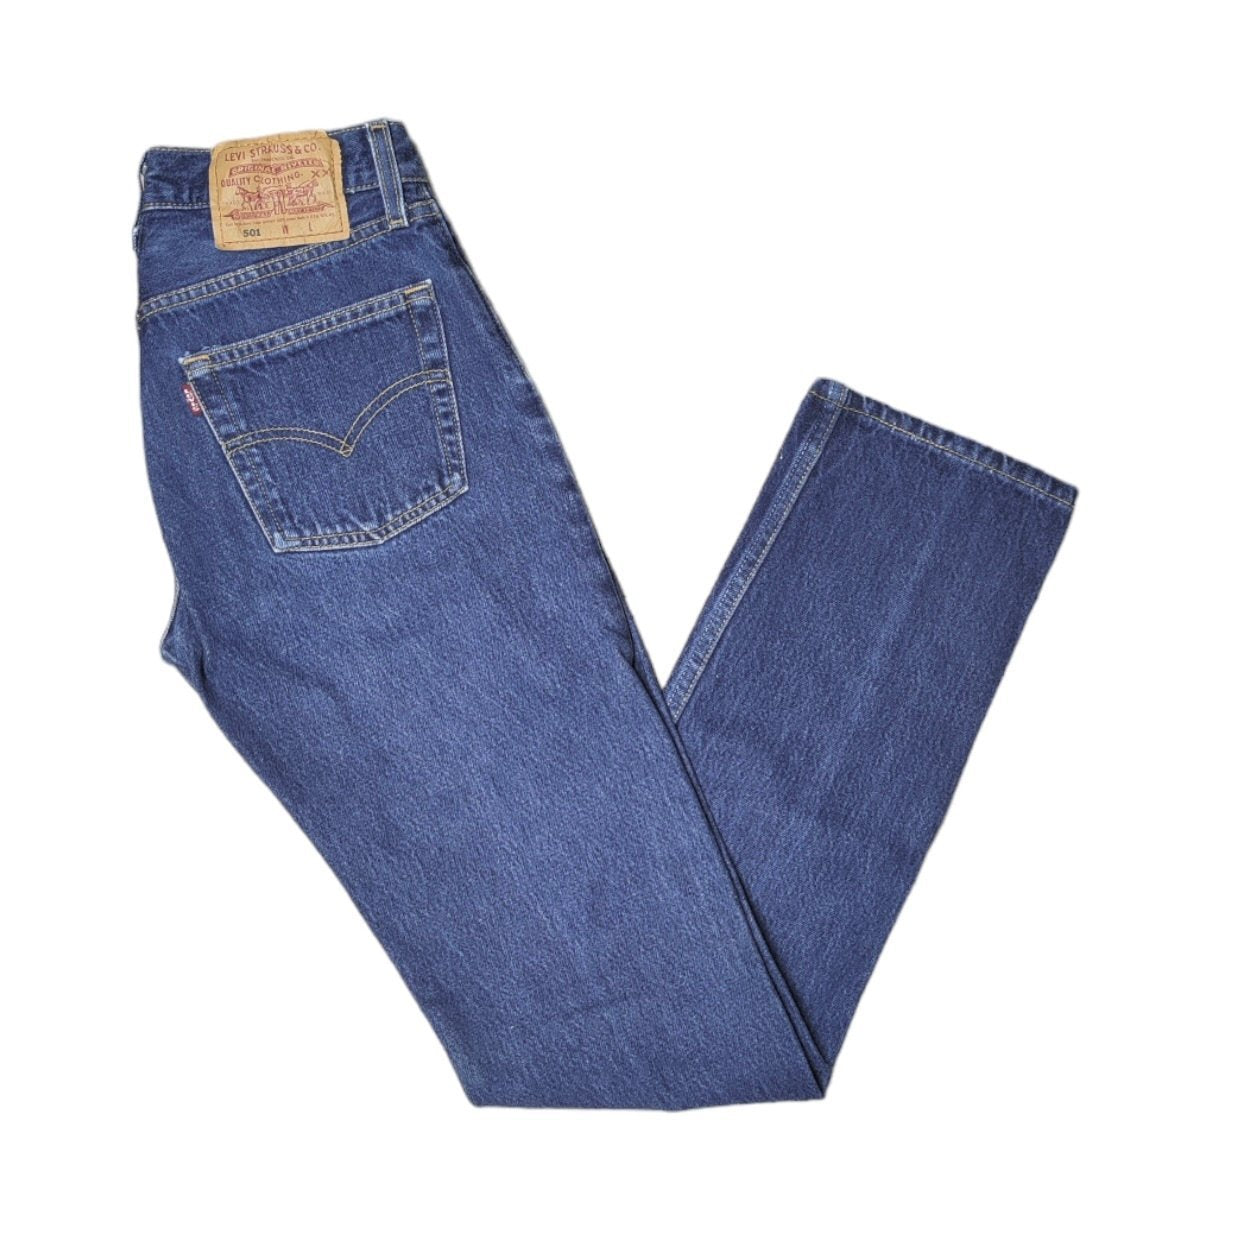 Vintage Levis 501 Blue Jeans (W26/L32)